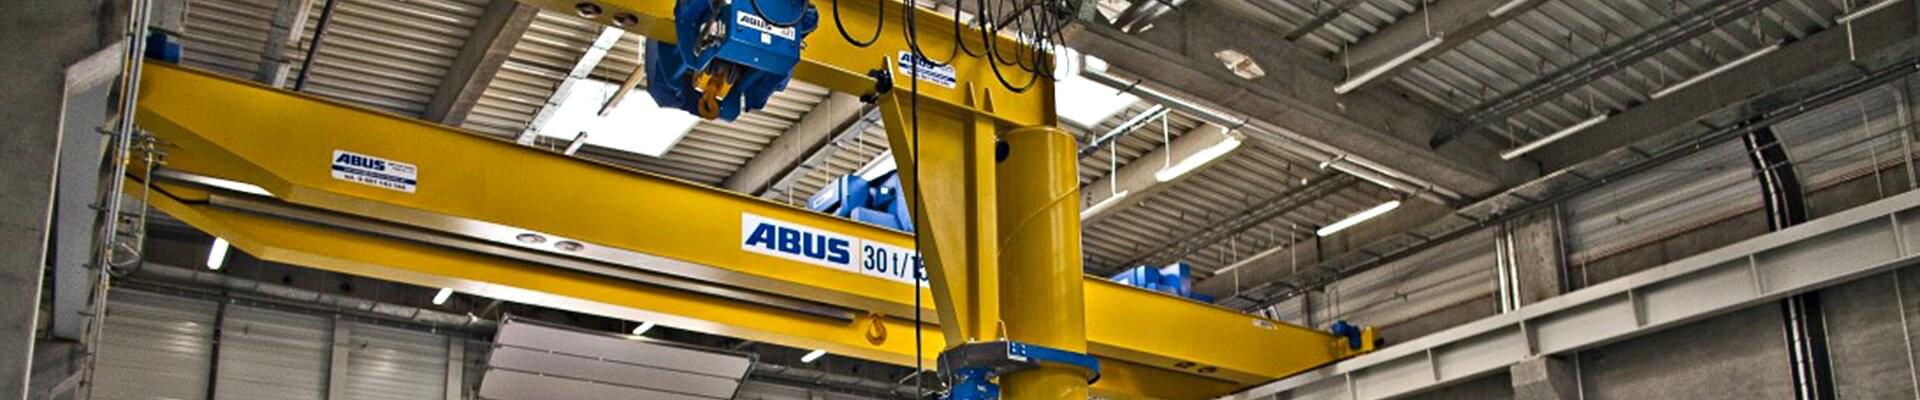 ABUS svängkran med en lastkapacitet på 3,2 ton och en armlängd på 5 meter på Rolls Royce-företaget i Polen